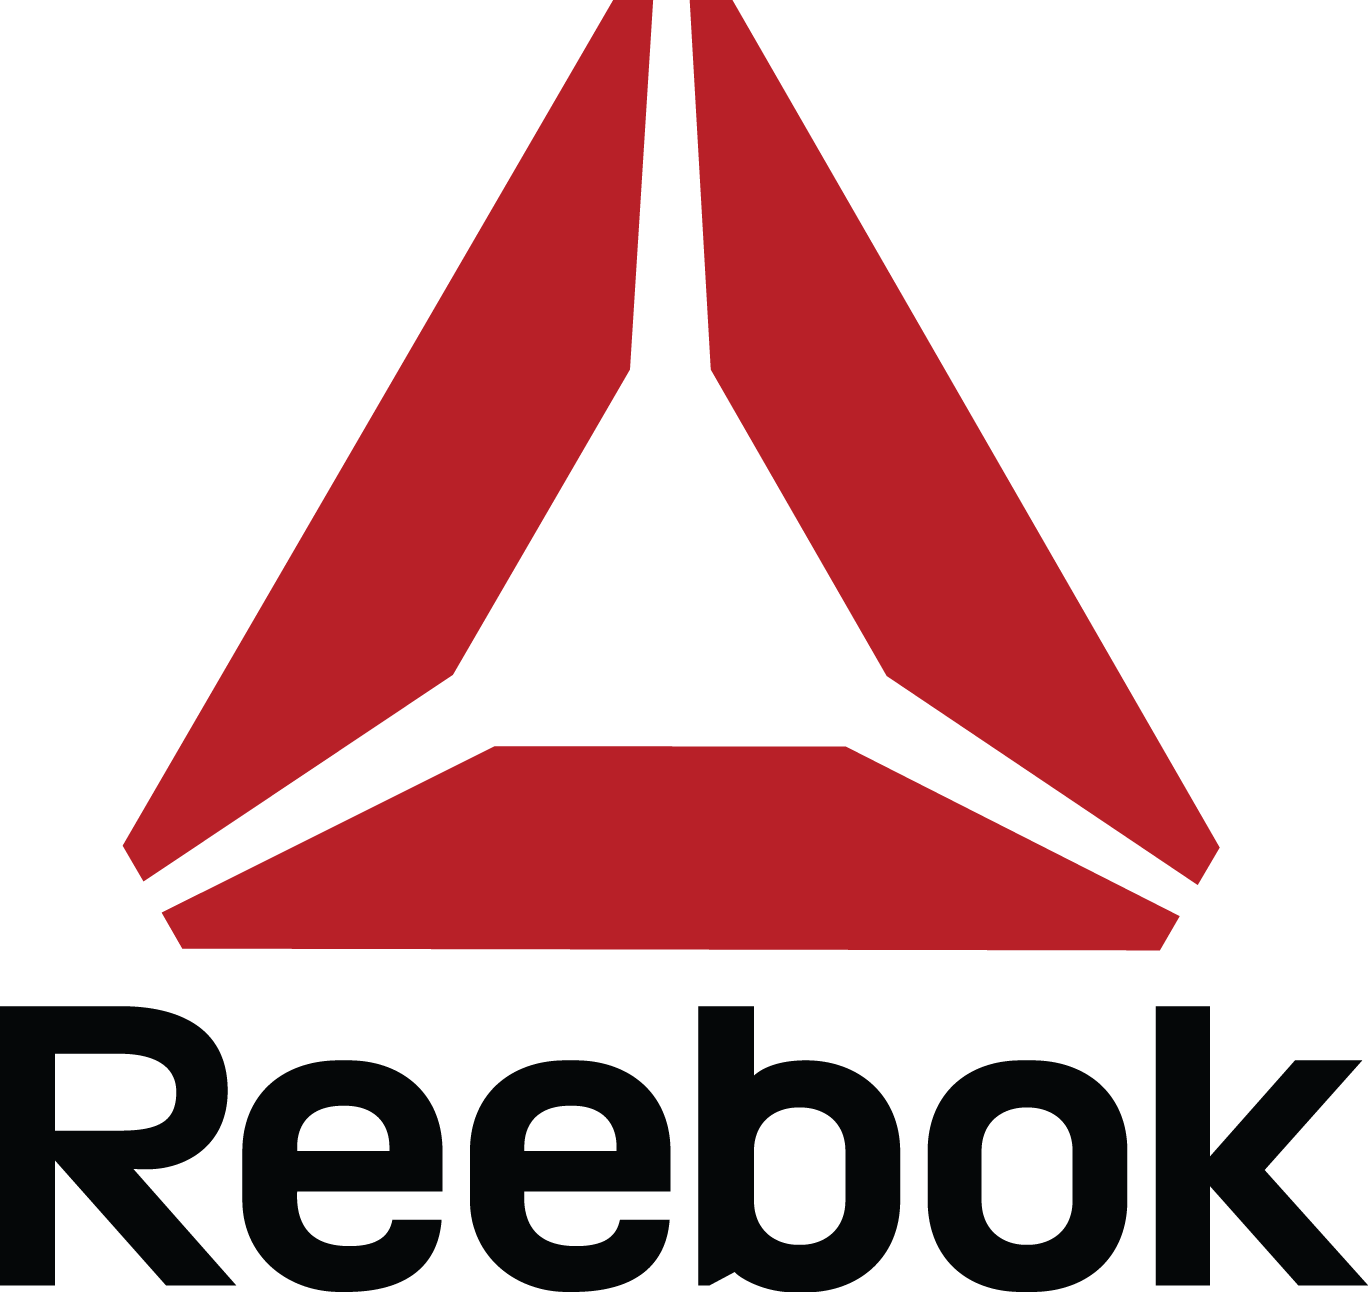 Resultado de imagen de reebok logo wallpaper. Logos